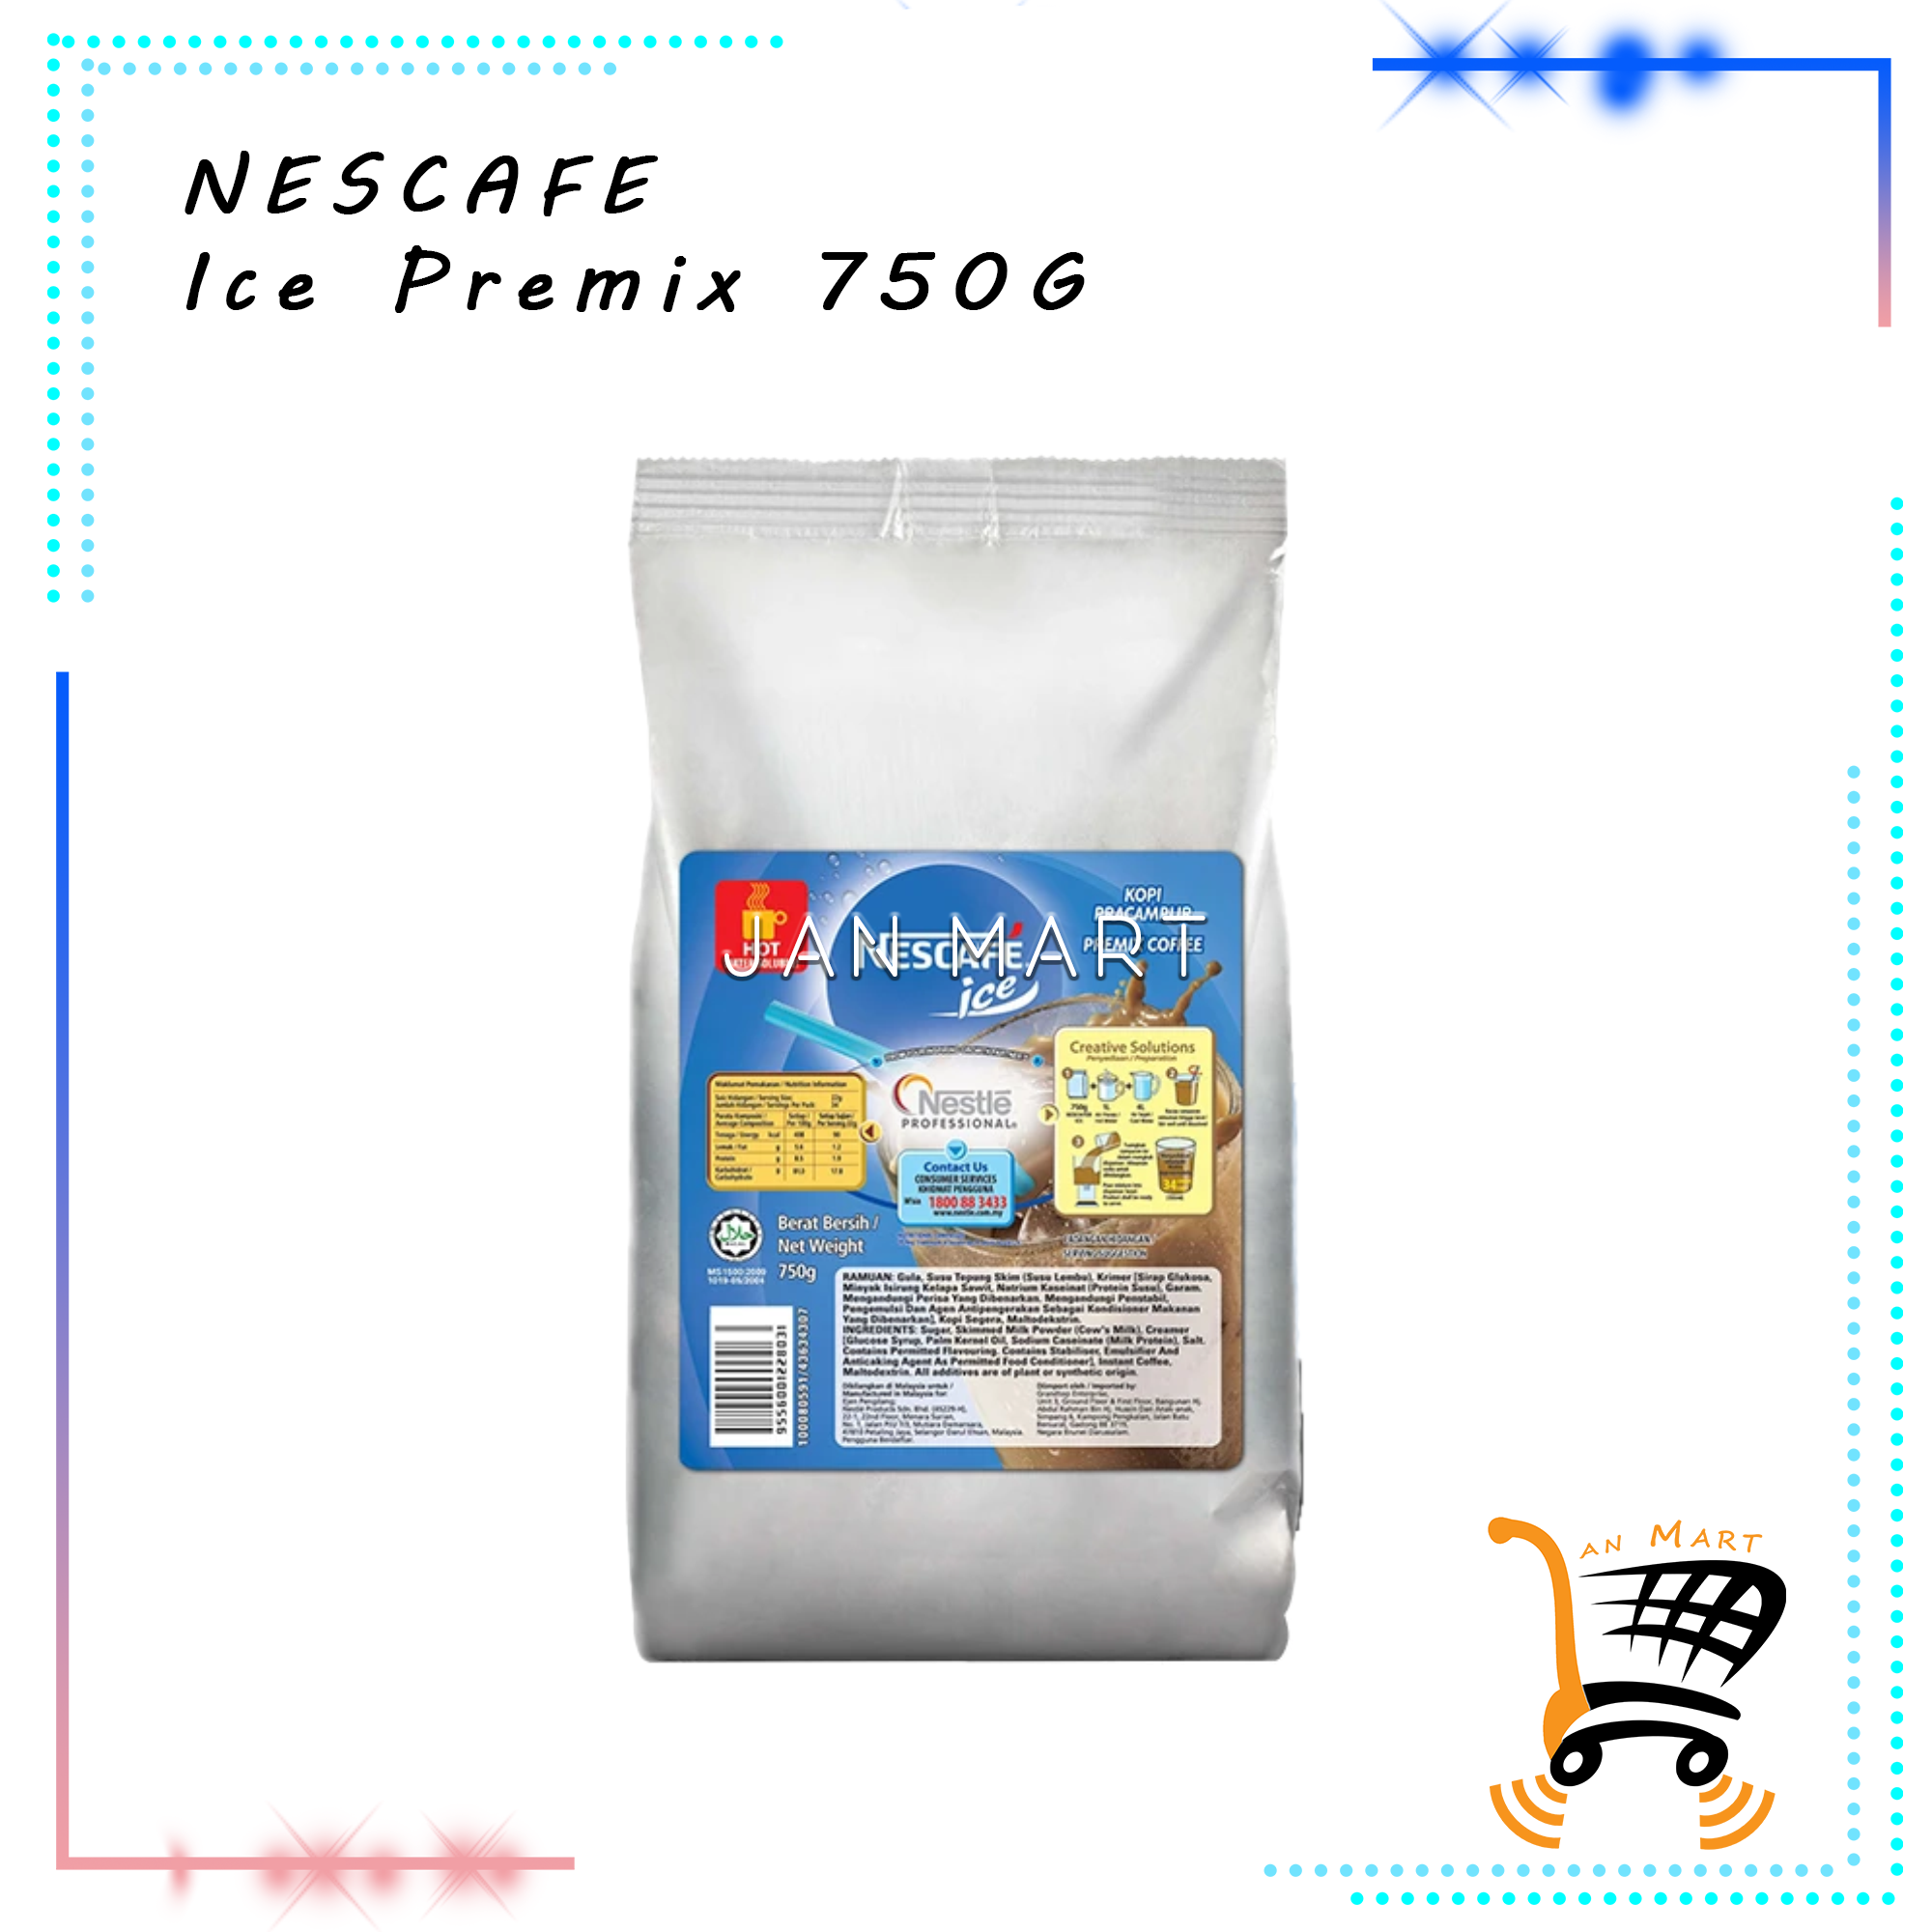 NESCAFE Ice Premix Coffee 750g